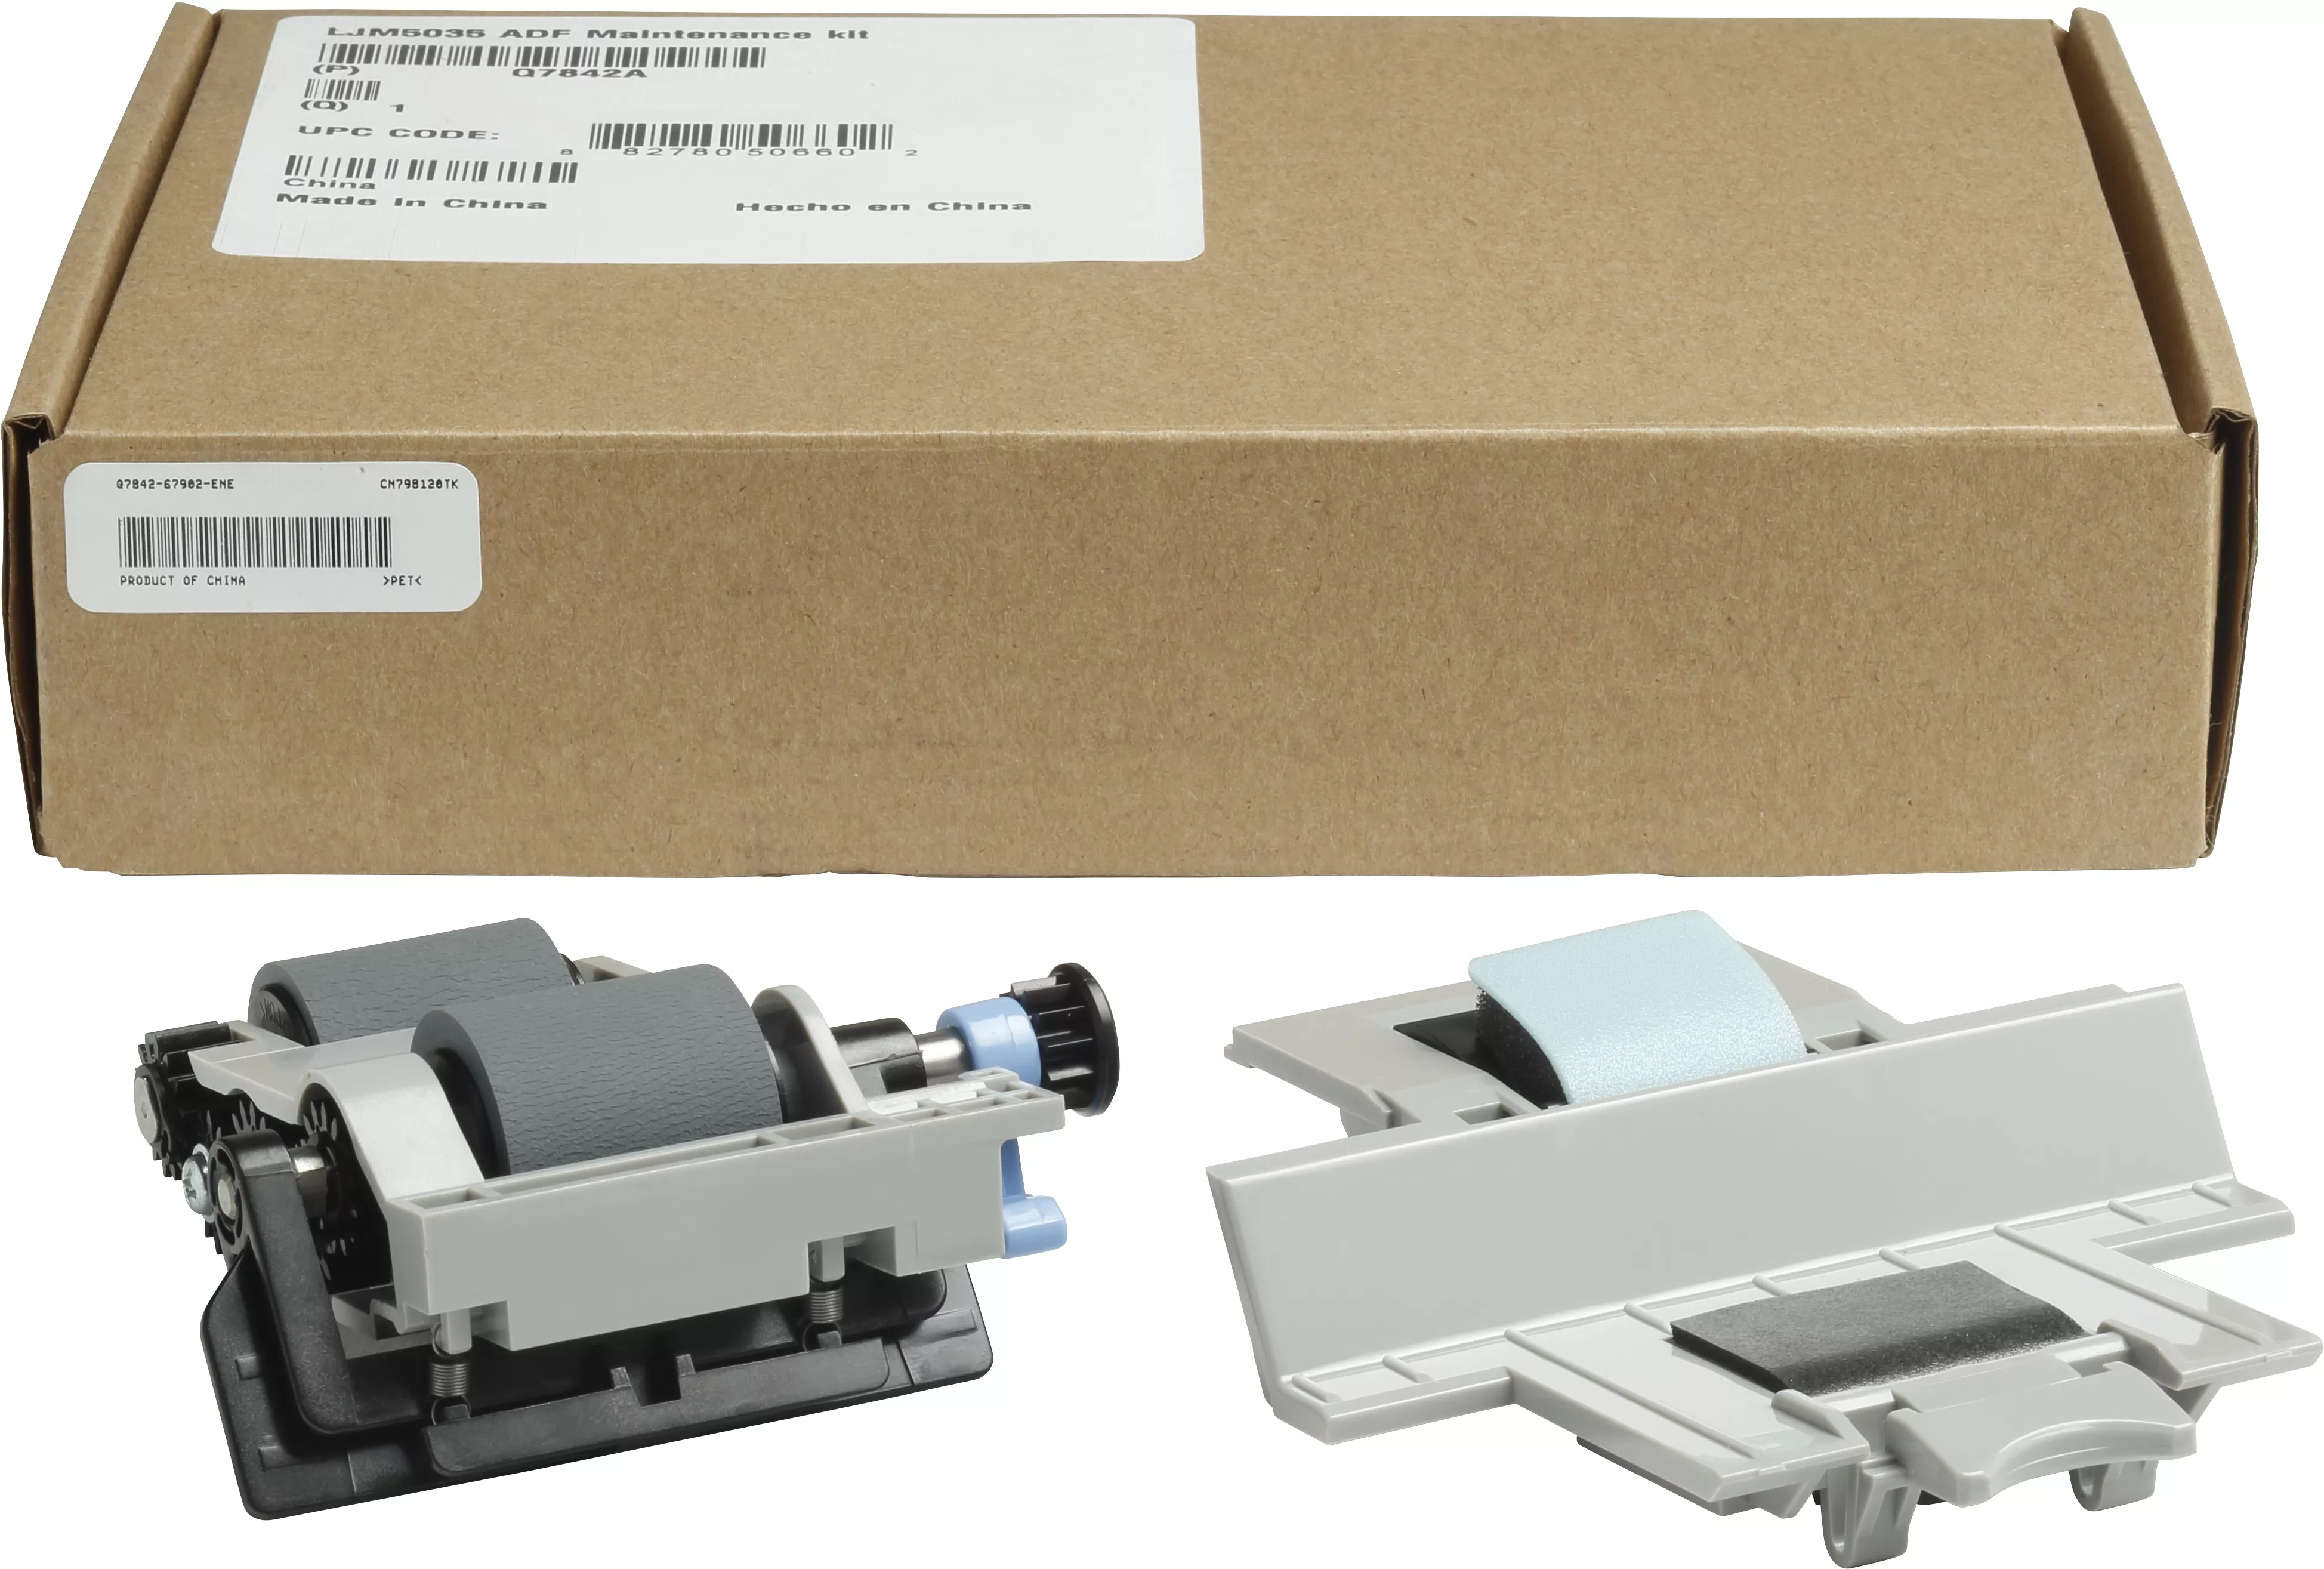 Vente Kit de maintenance ADF pour imprimante multifonction HP HP au meilleur prix - visuel 2